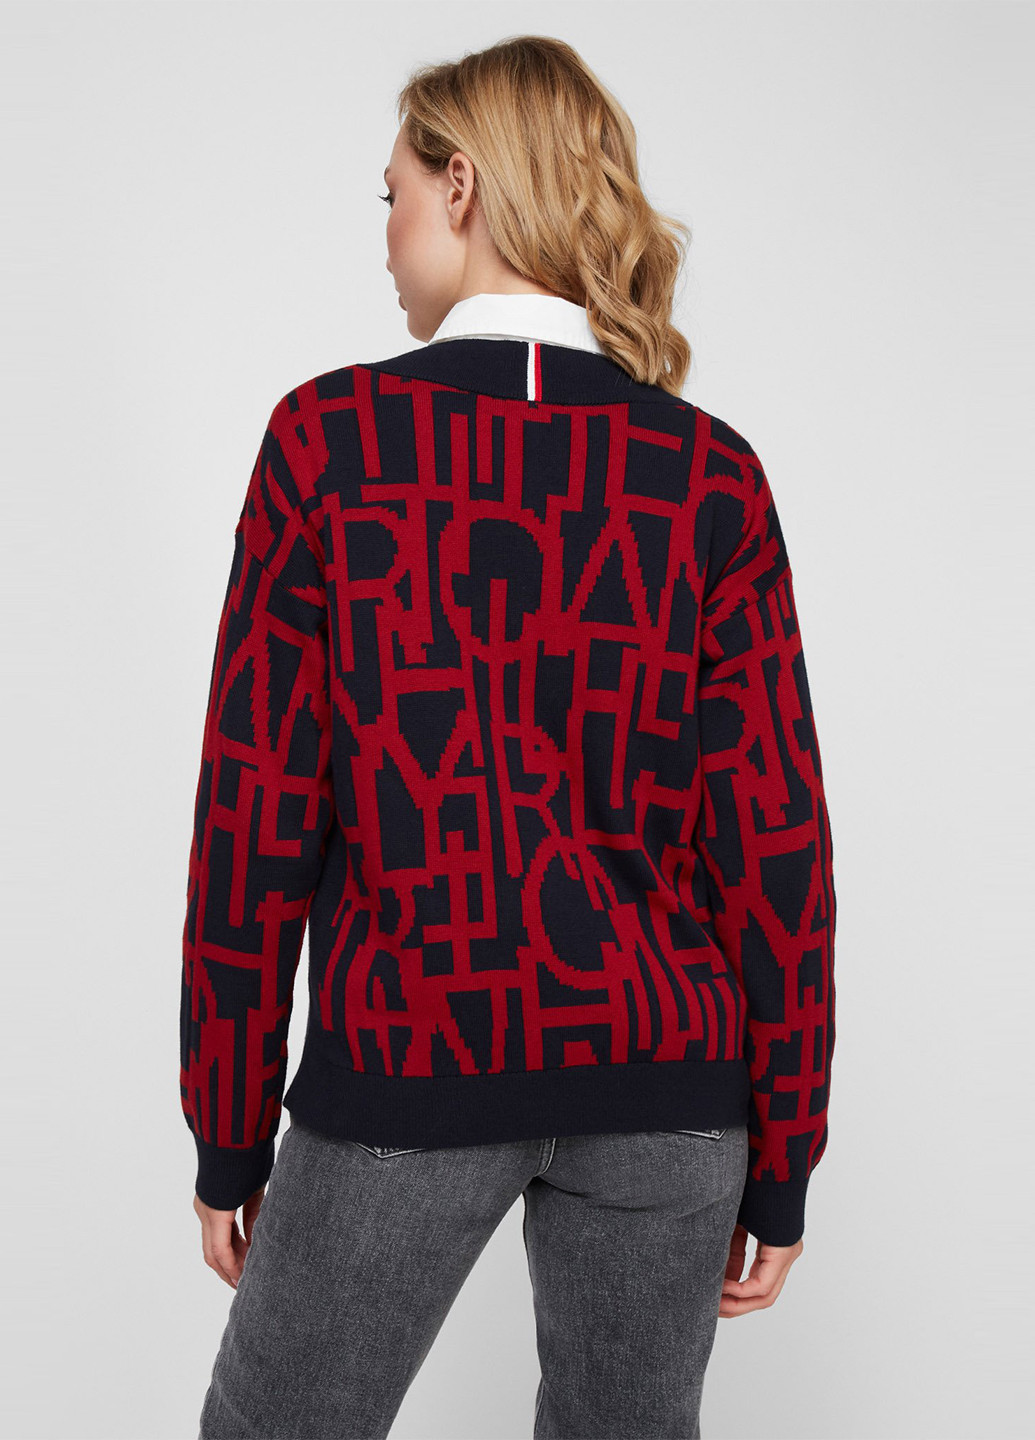 Комбинированный демисезонный пуловер пуловер Tommy Hilfiger